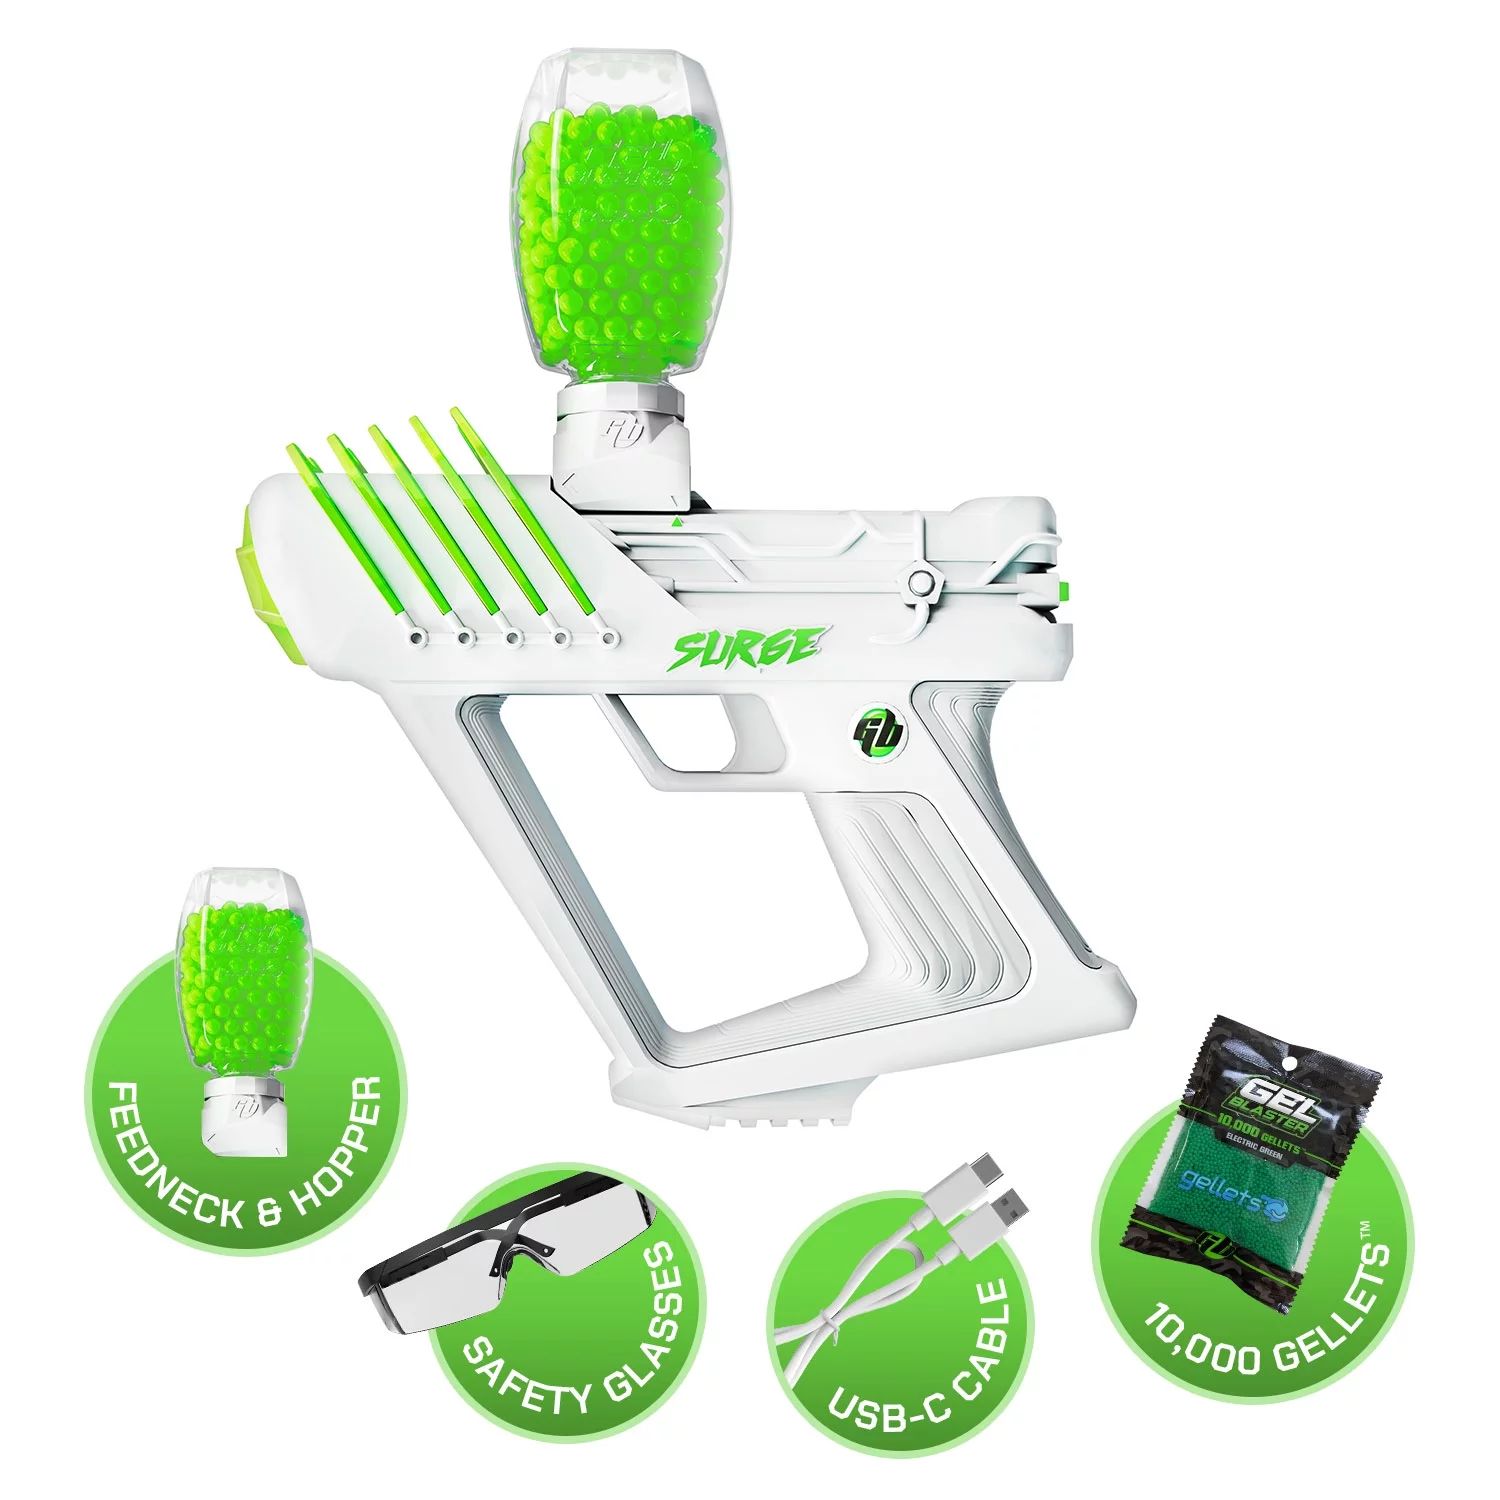 Gel Blaster SURGE, Water-Based Gel Bead Blaster with 10,000 Electric Green Gellet Pack | Walmart (US)